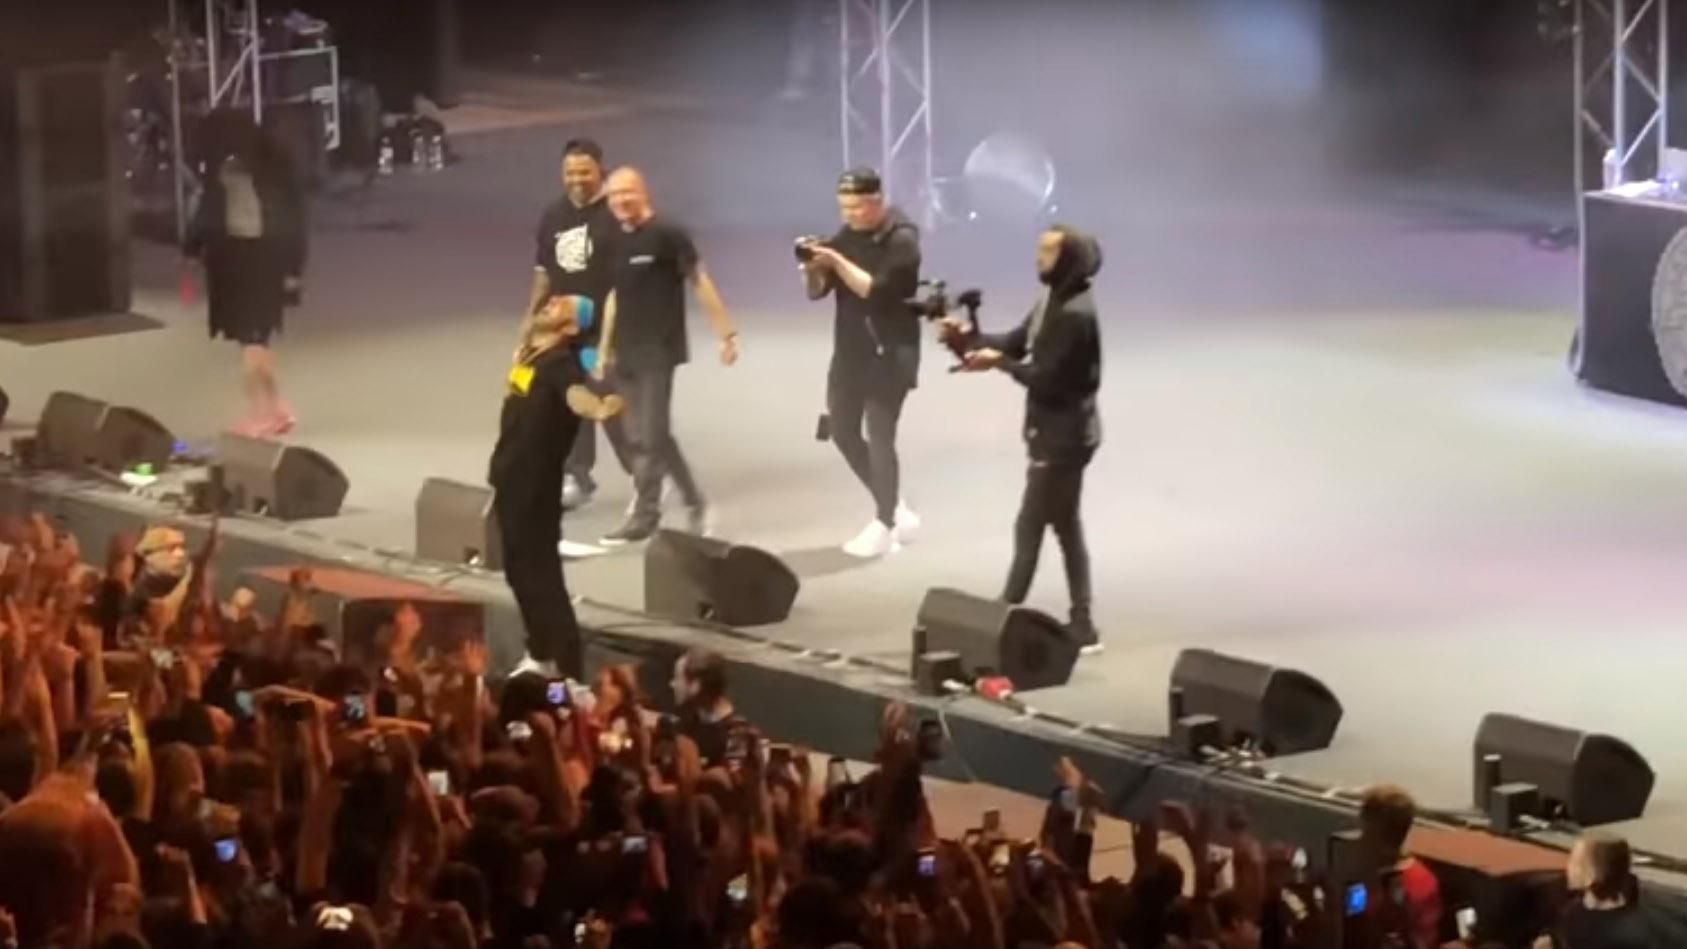 Під час концерту Oxxxymiron американський репер пов'язав на голову український прапор: відео